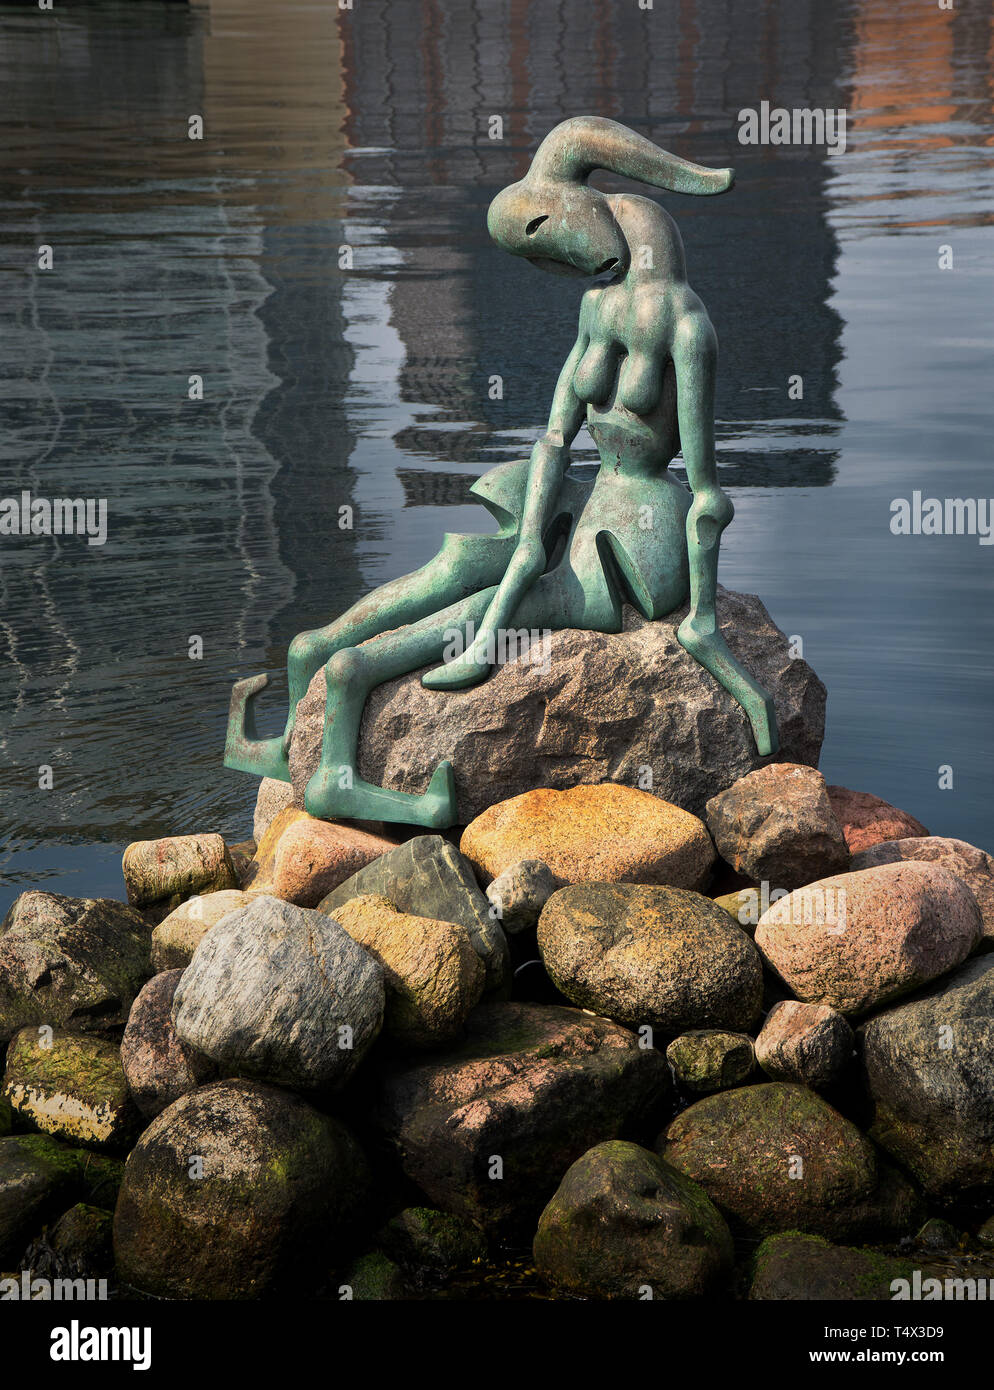 Modificati Geneticamente Sirenetta di Copenaghen, questo è Bjørn Nørgaard la scultura che contrasta con la vicina statua della Sirenetta. Foto Stock